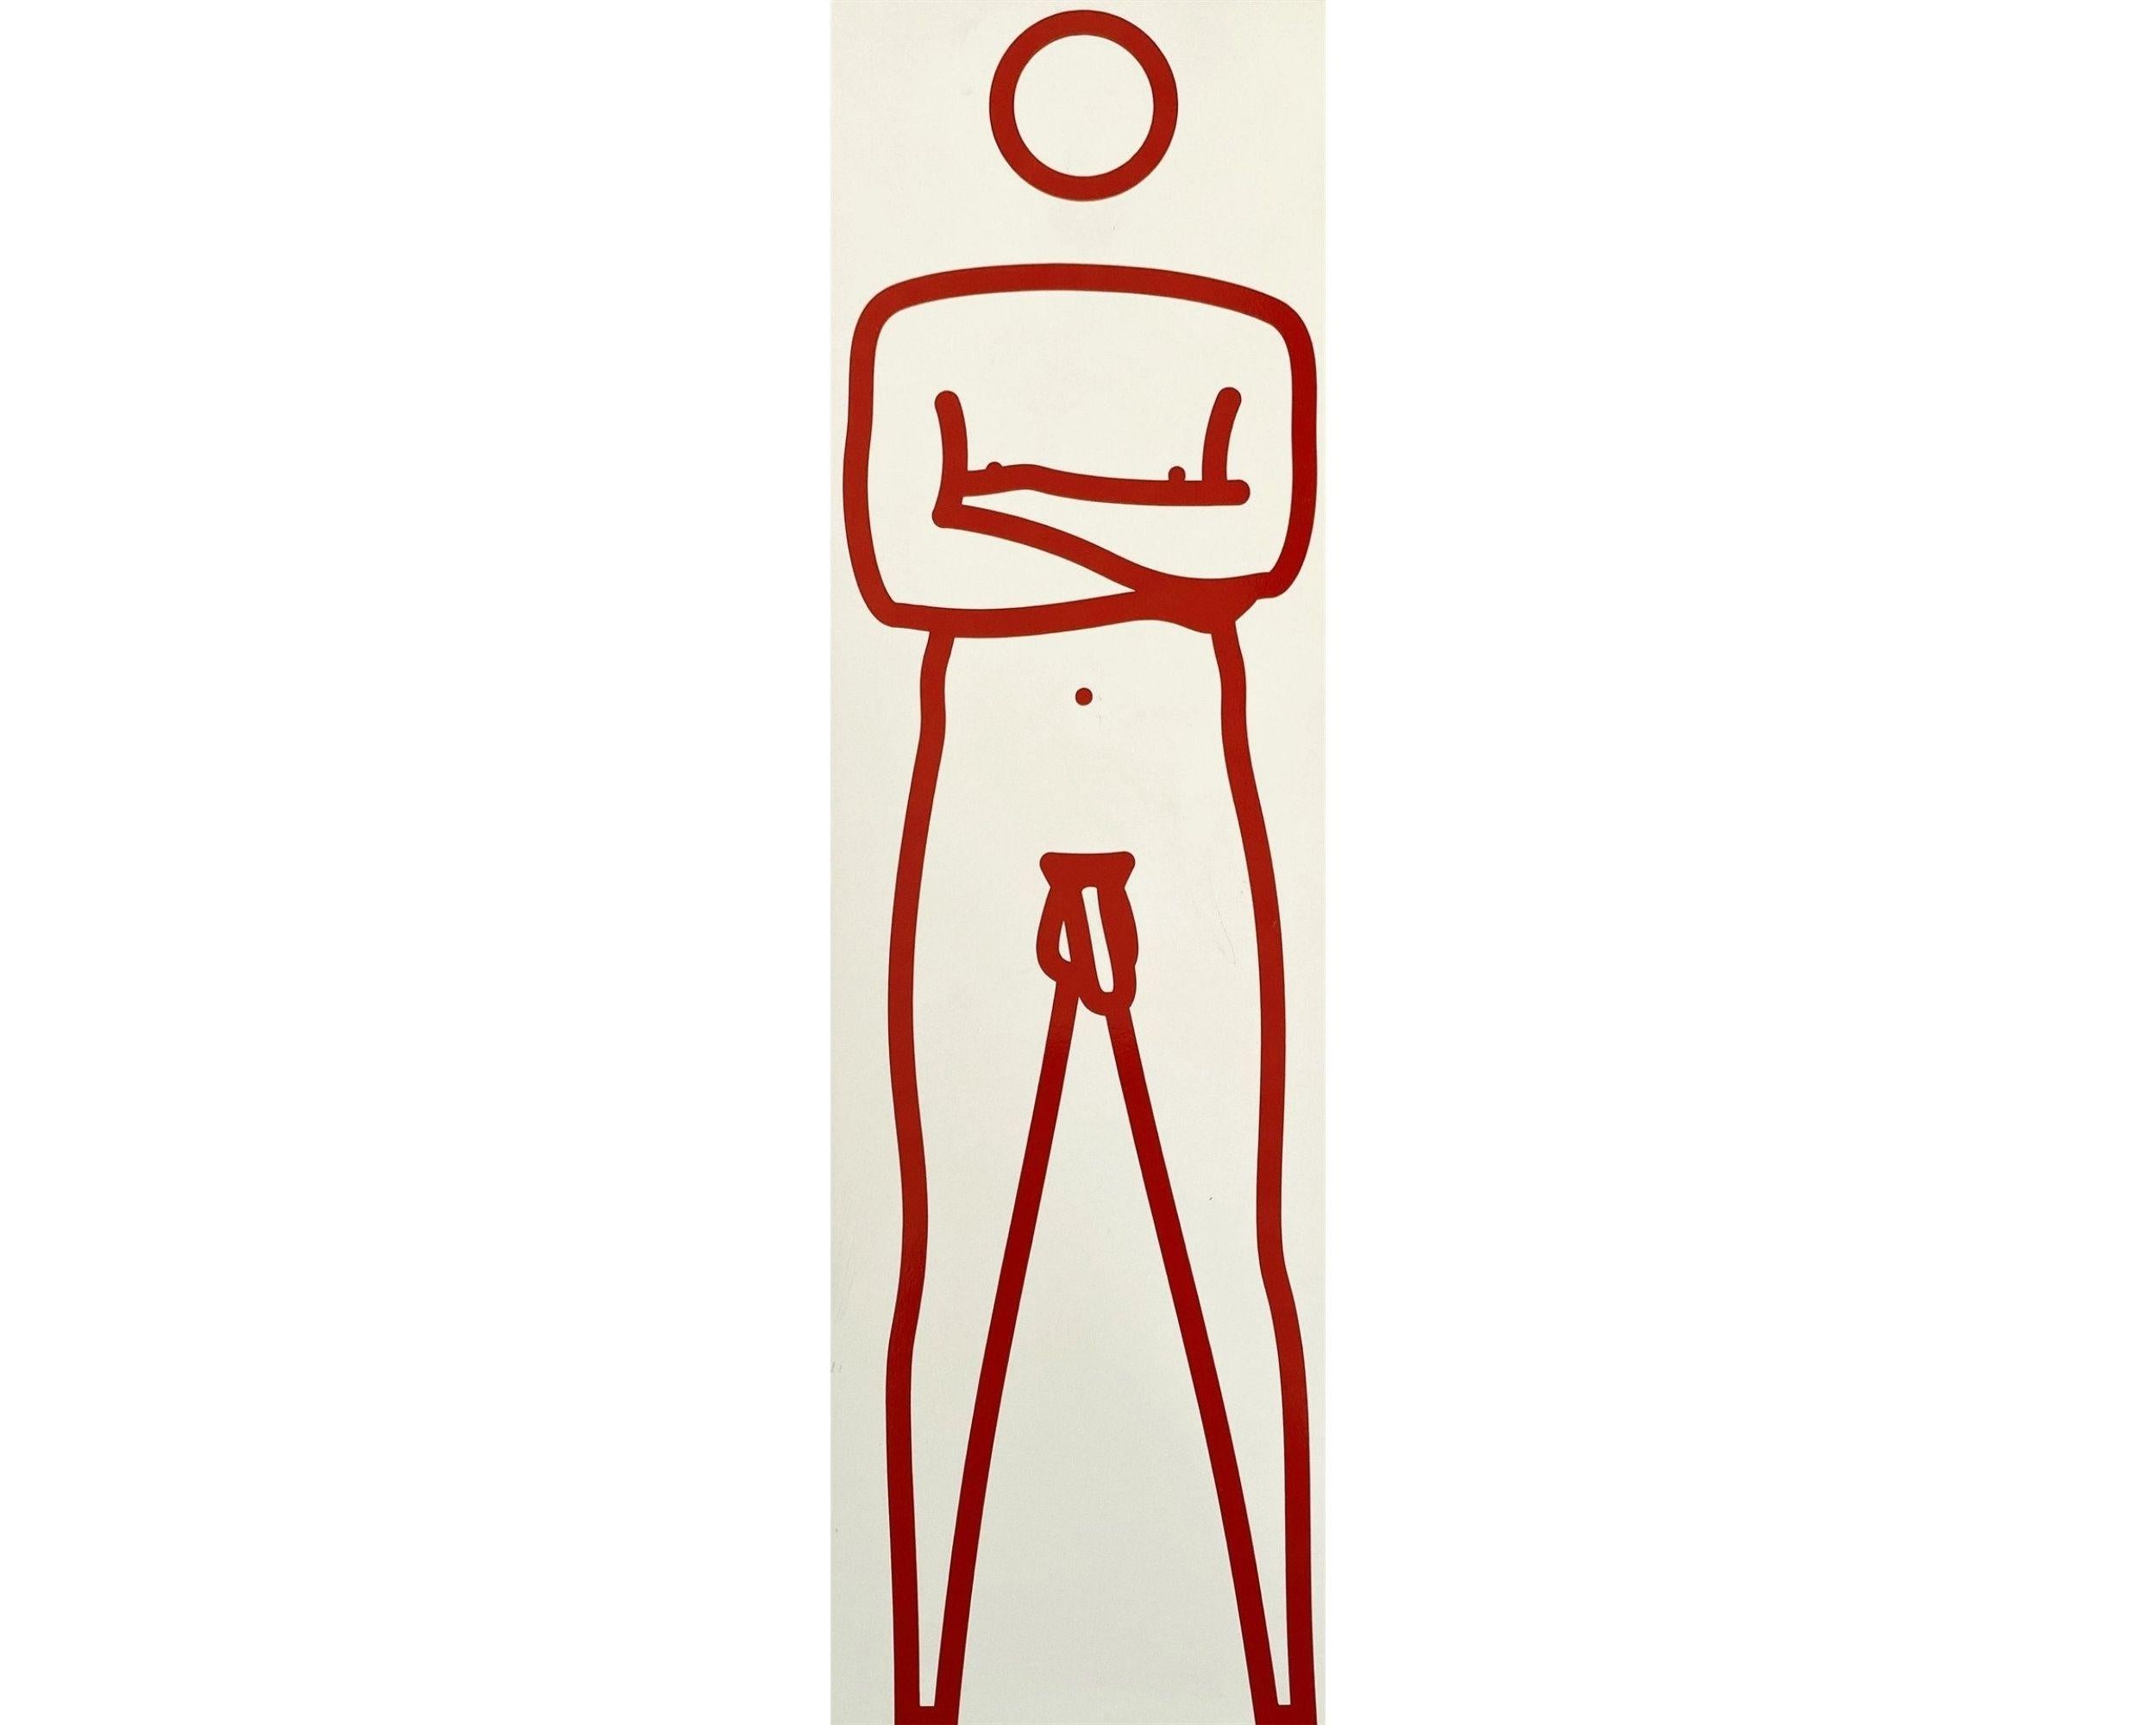 Julian nu, bras croisés, 2000
Julian Opie

Peinture et vinyle sur bois, sculpture rouge sur blanc 
Signé au stylo sur la face inférieure
De l'édition de trois, chacun une variante de couleur unique
Sculpture : 33 × 10 × 5 cm (13 × 4 × 2 in)
